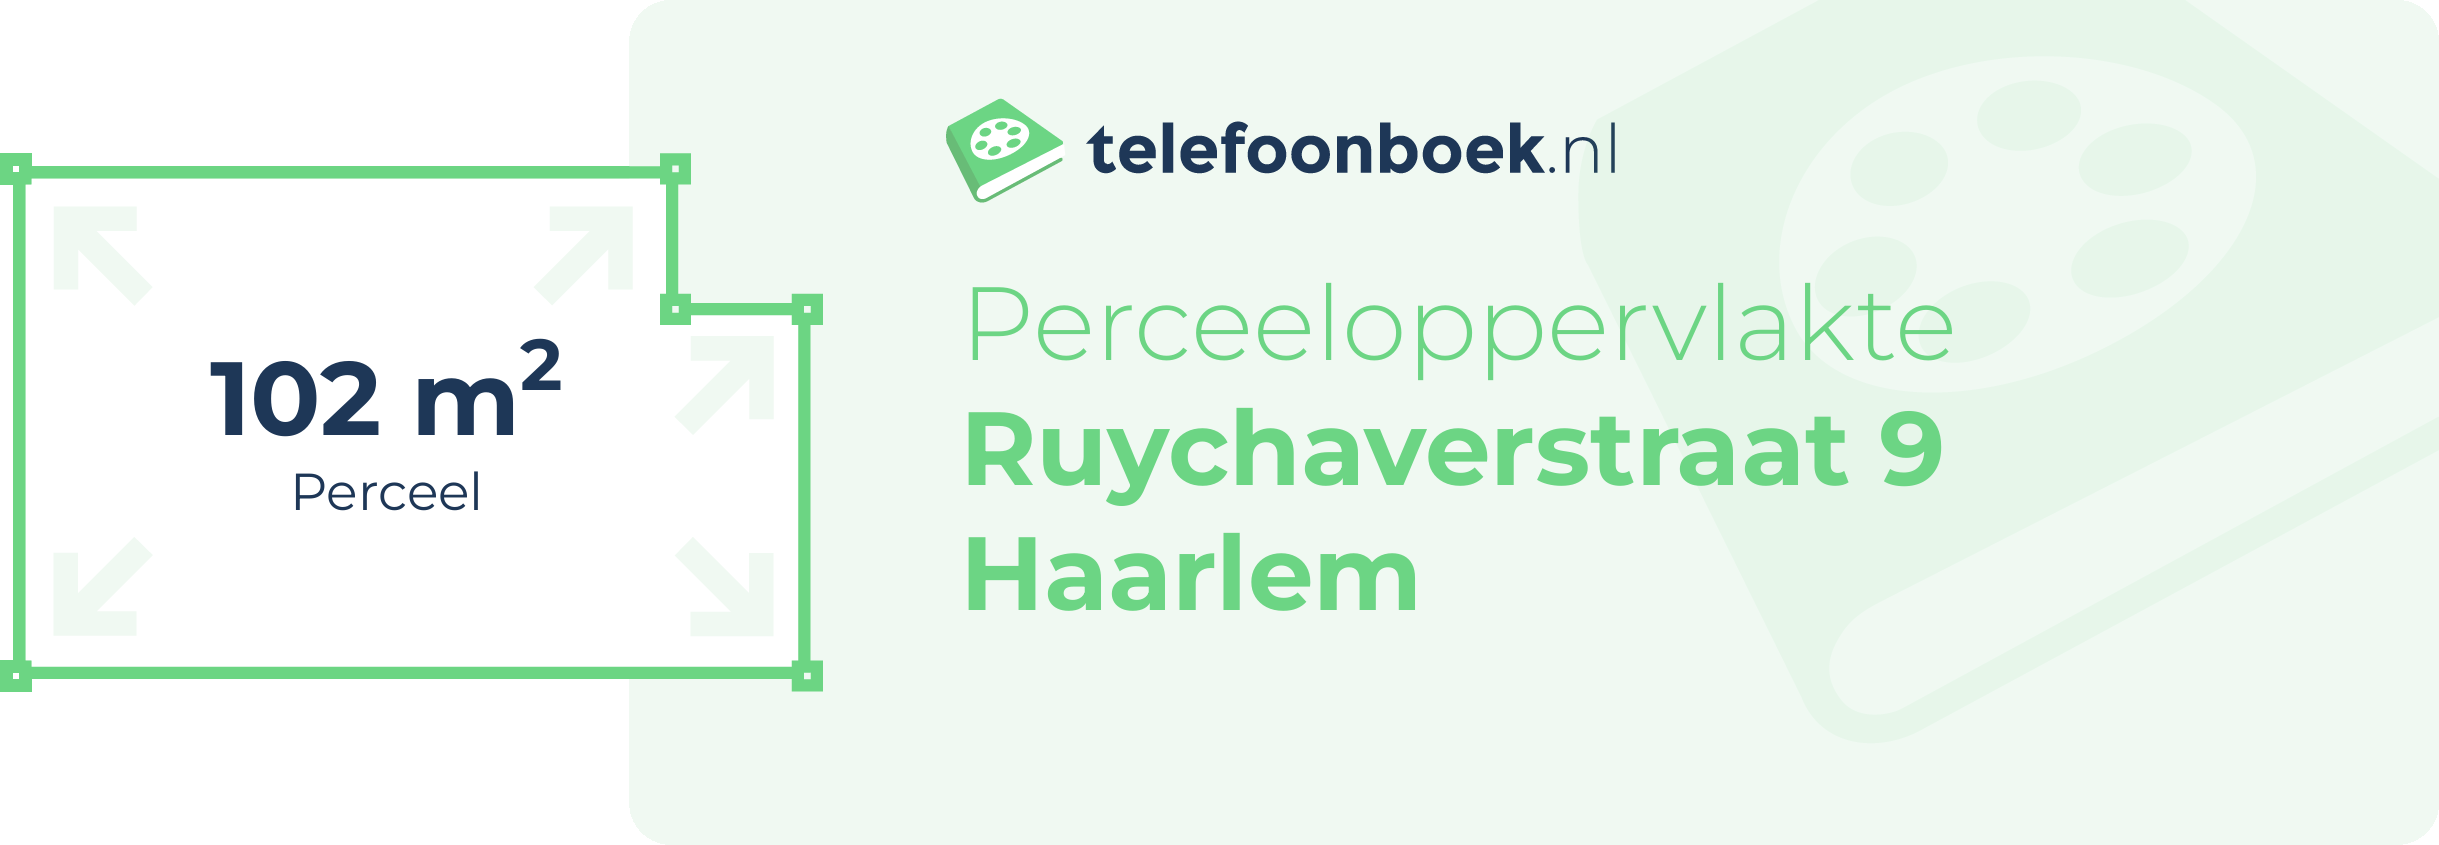 Perceeloppervlakte Ruychaverstraat 9 Haarlem